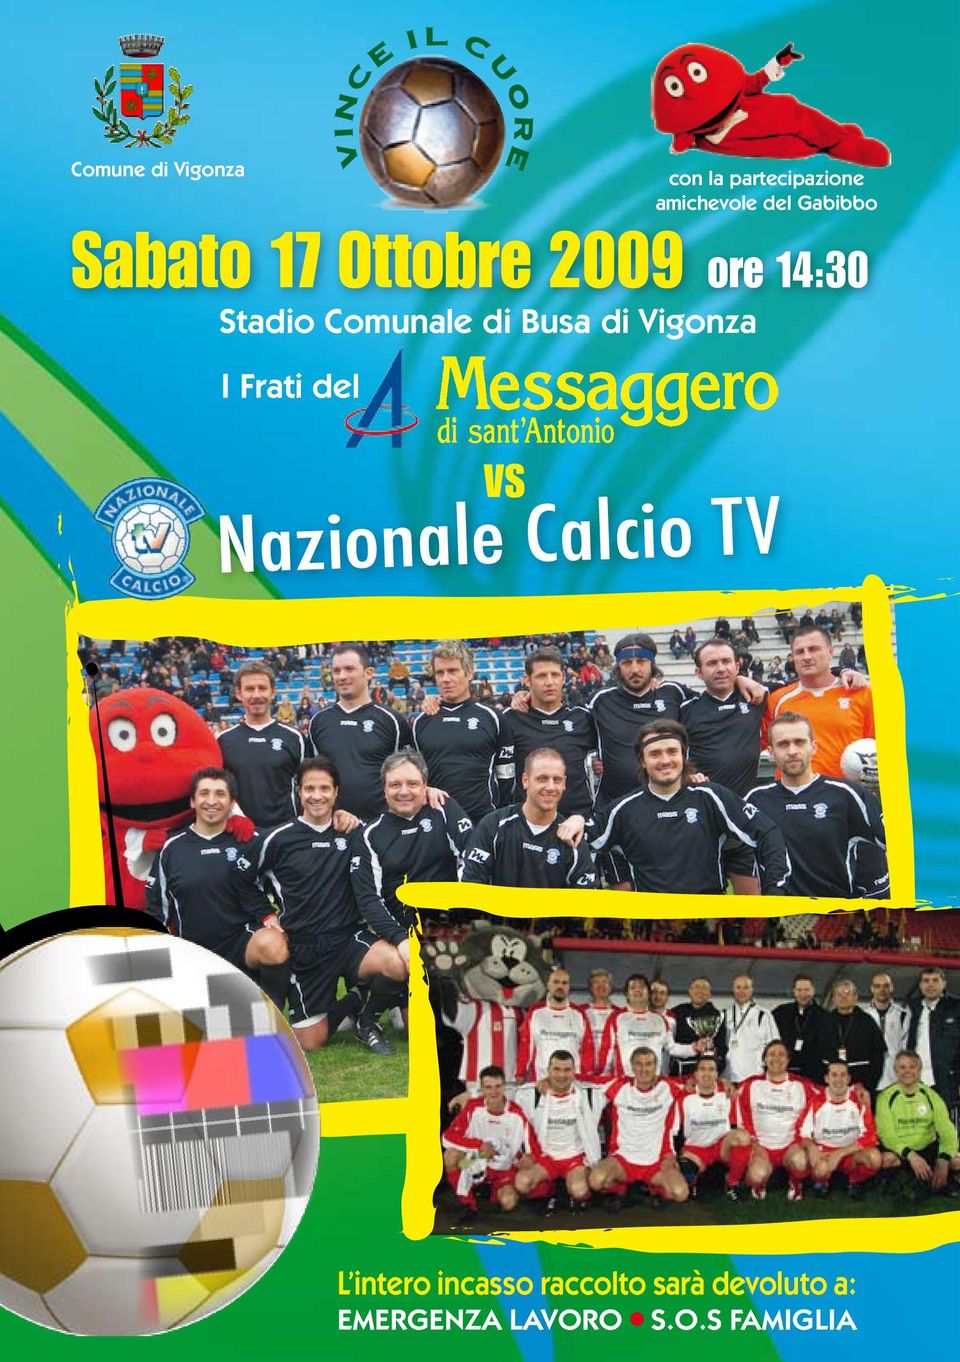 Vigonza I Frati del VINCE IL CUORE VS Nazionale Calcio TV L